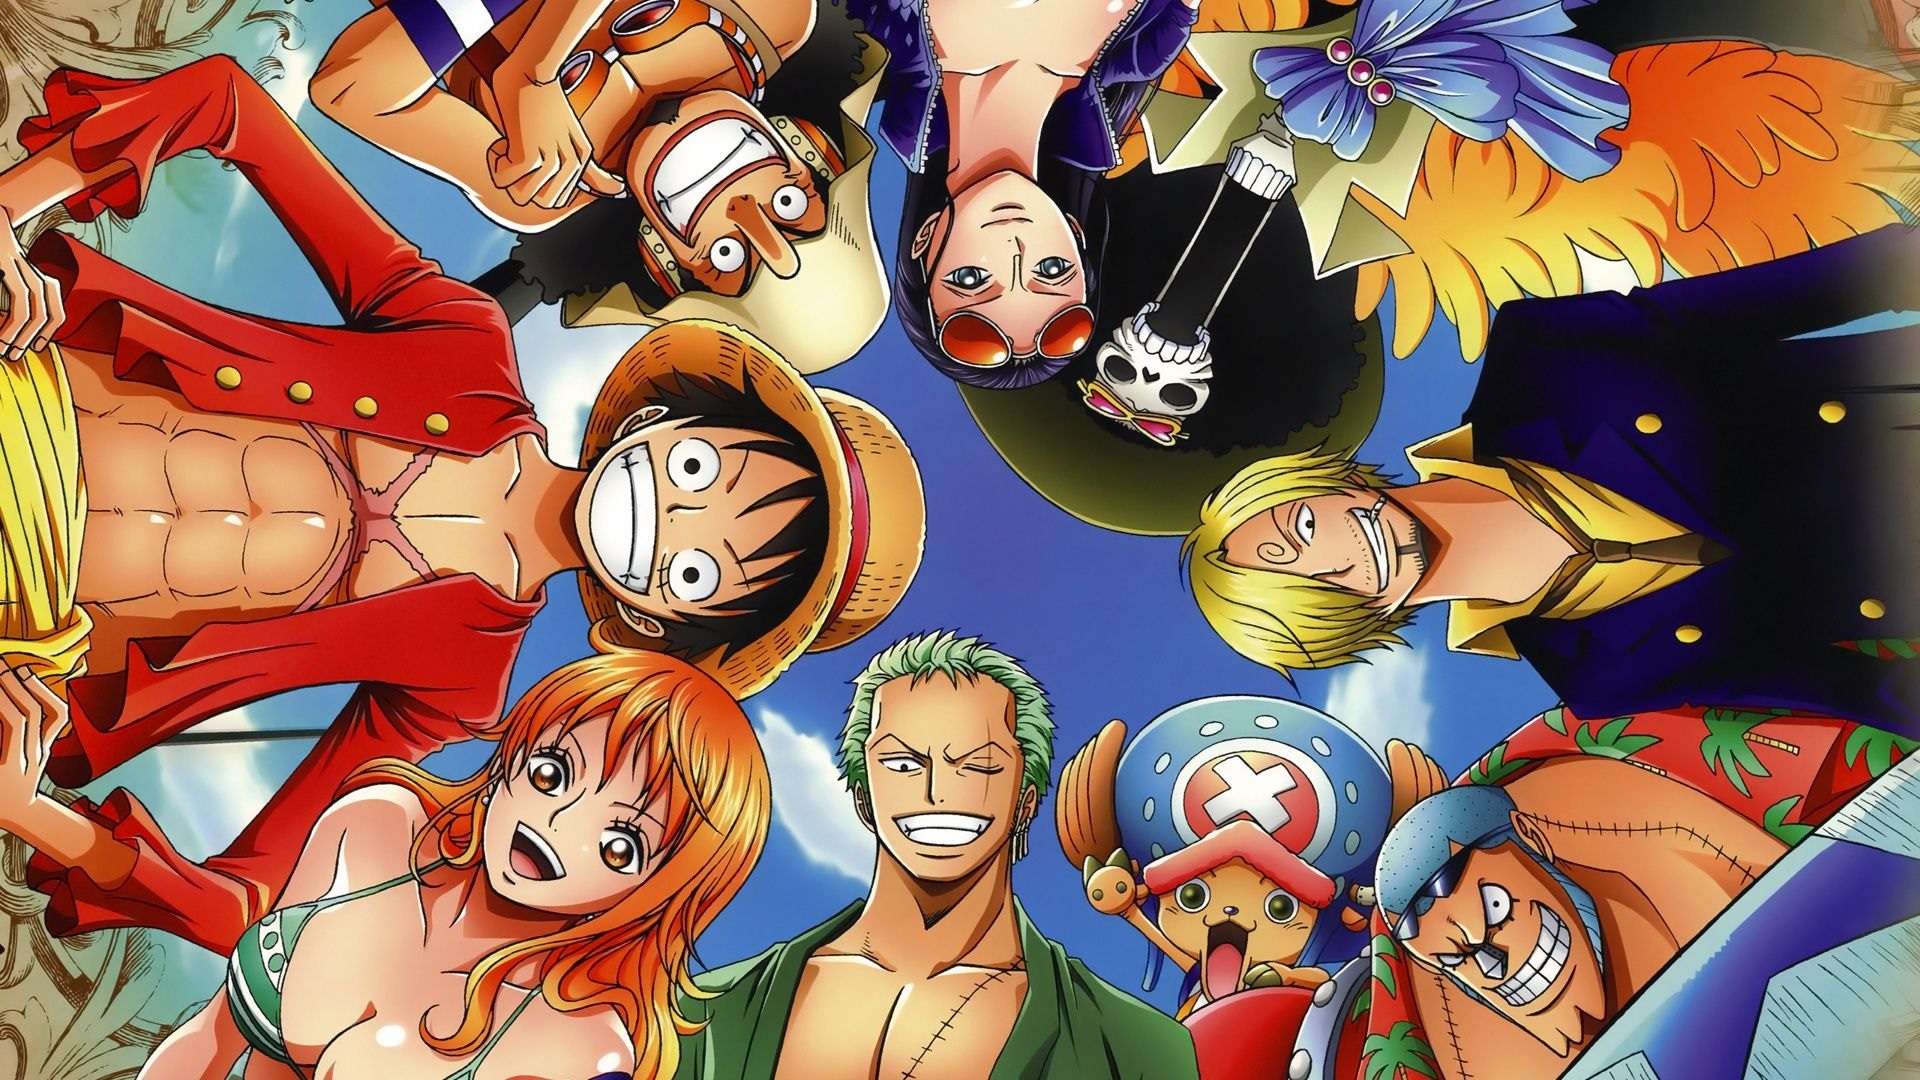 Hình ảnh anime One Piece: Vậy là bạn đã theo dõi hết các tập phim anime One Piece? Nếu chưa, còn chần chờ gì nữa, những hình ảnh tuyệt đẹp về các nhân vật của bộ truyện sẽ khiến bạn muốn xem ngay và luôn!